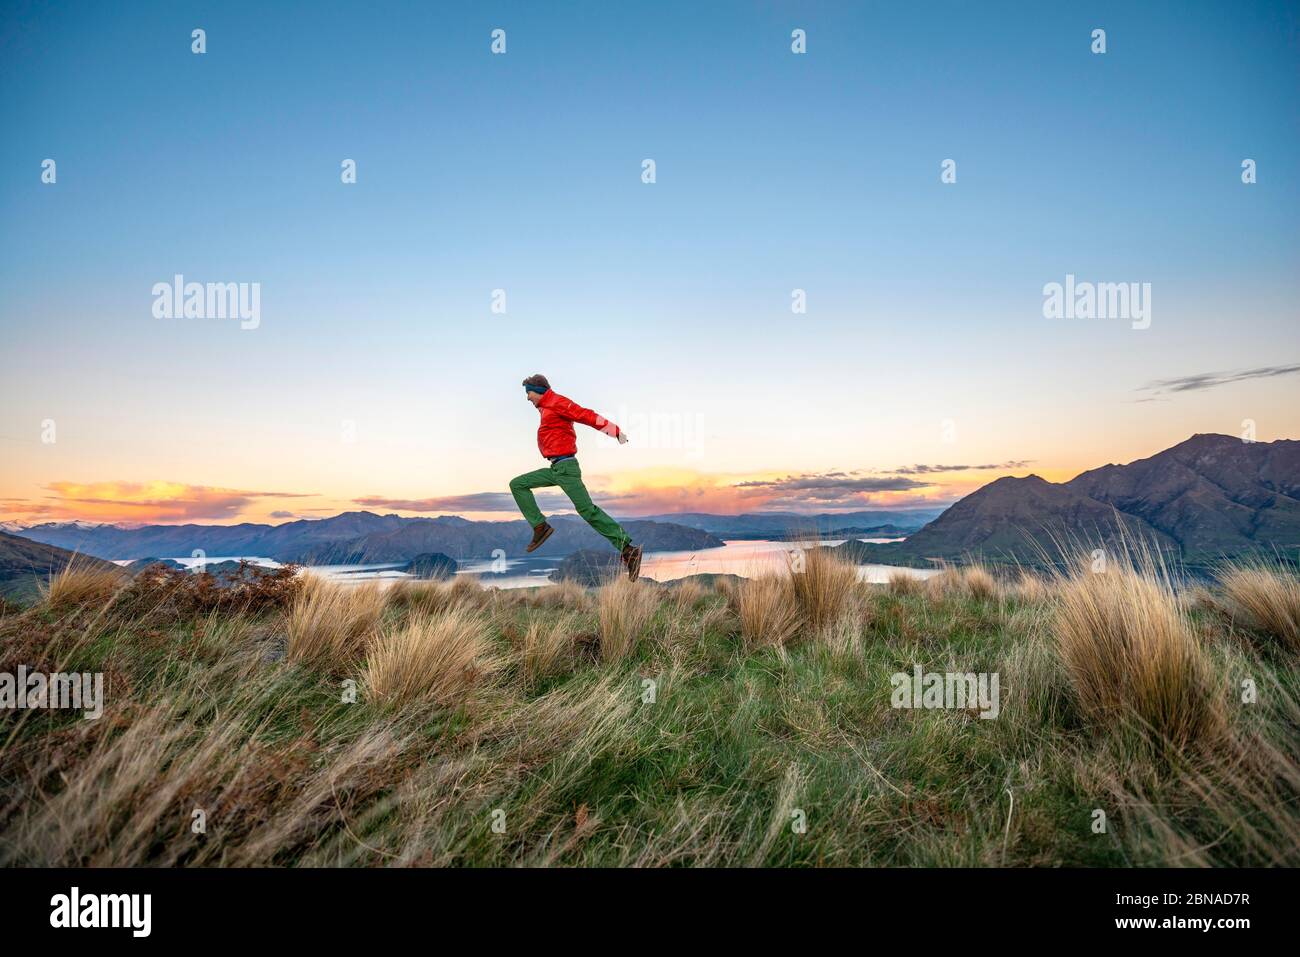 Gli escursionisti salta in aria, vista panoramica del lago Wanaka e delle montagne al tramonto, Rocky Peak, Glendhu Bay, Otago, South Island Foto Stock